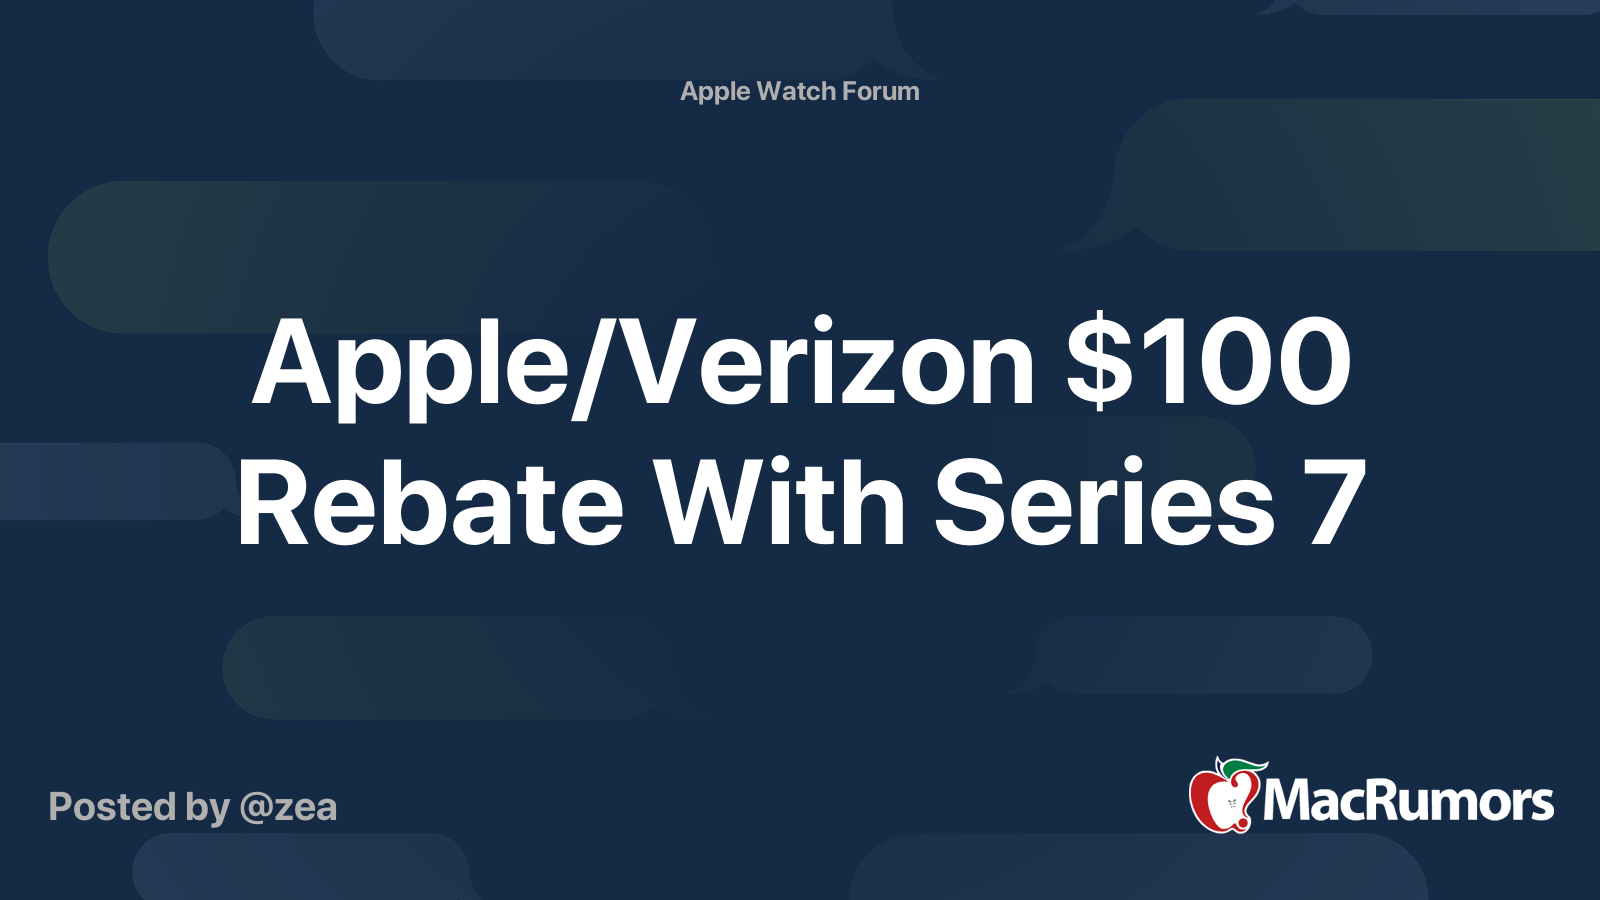 apple-verizon-100-rebate-with-series-7-macrumors-forums